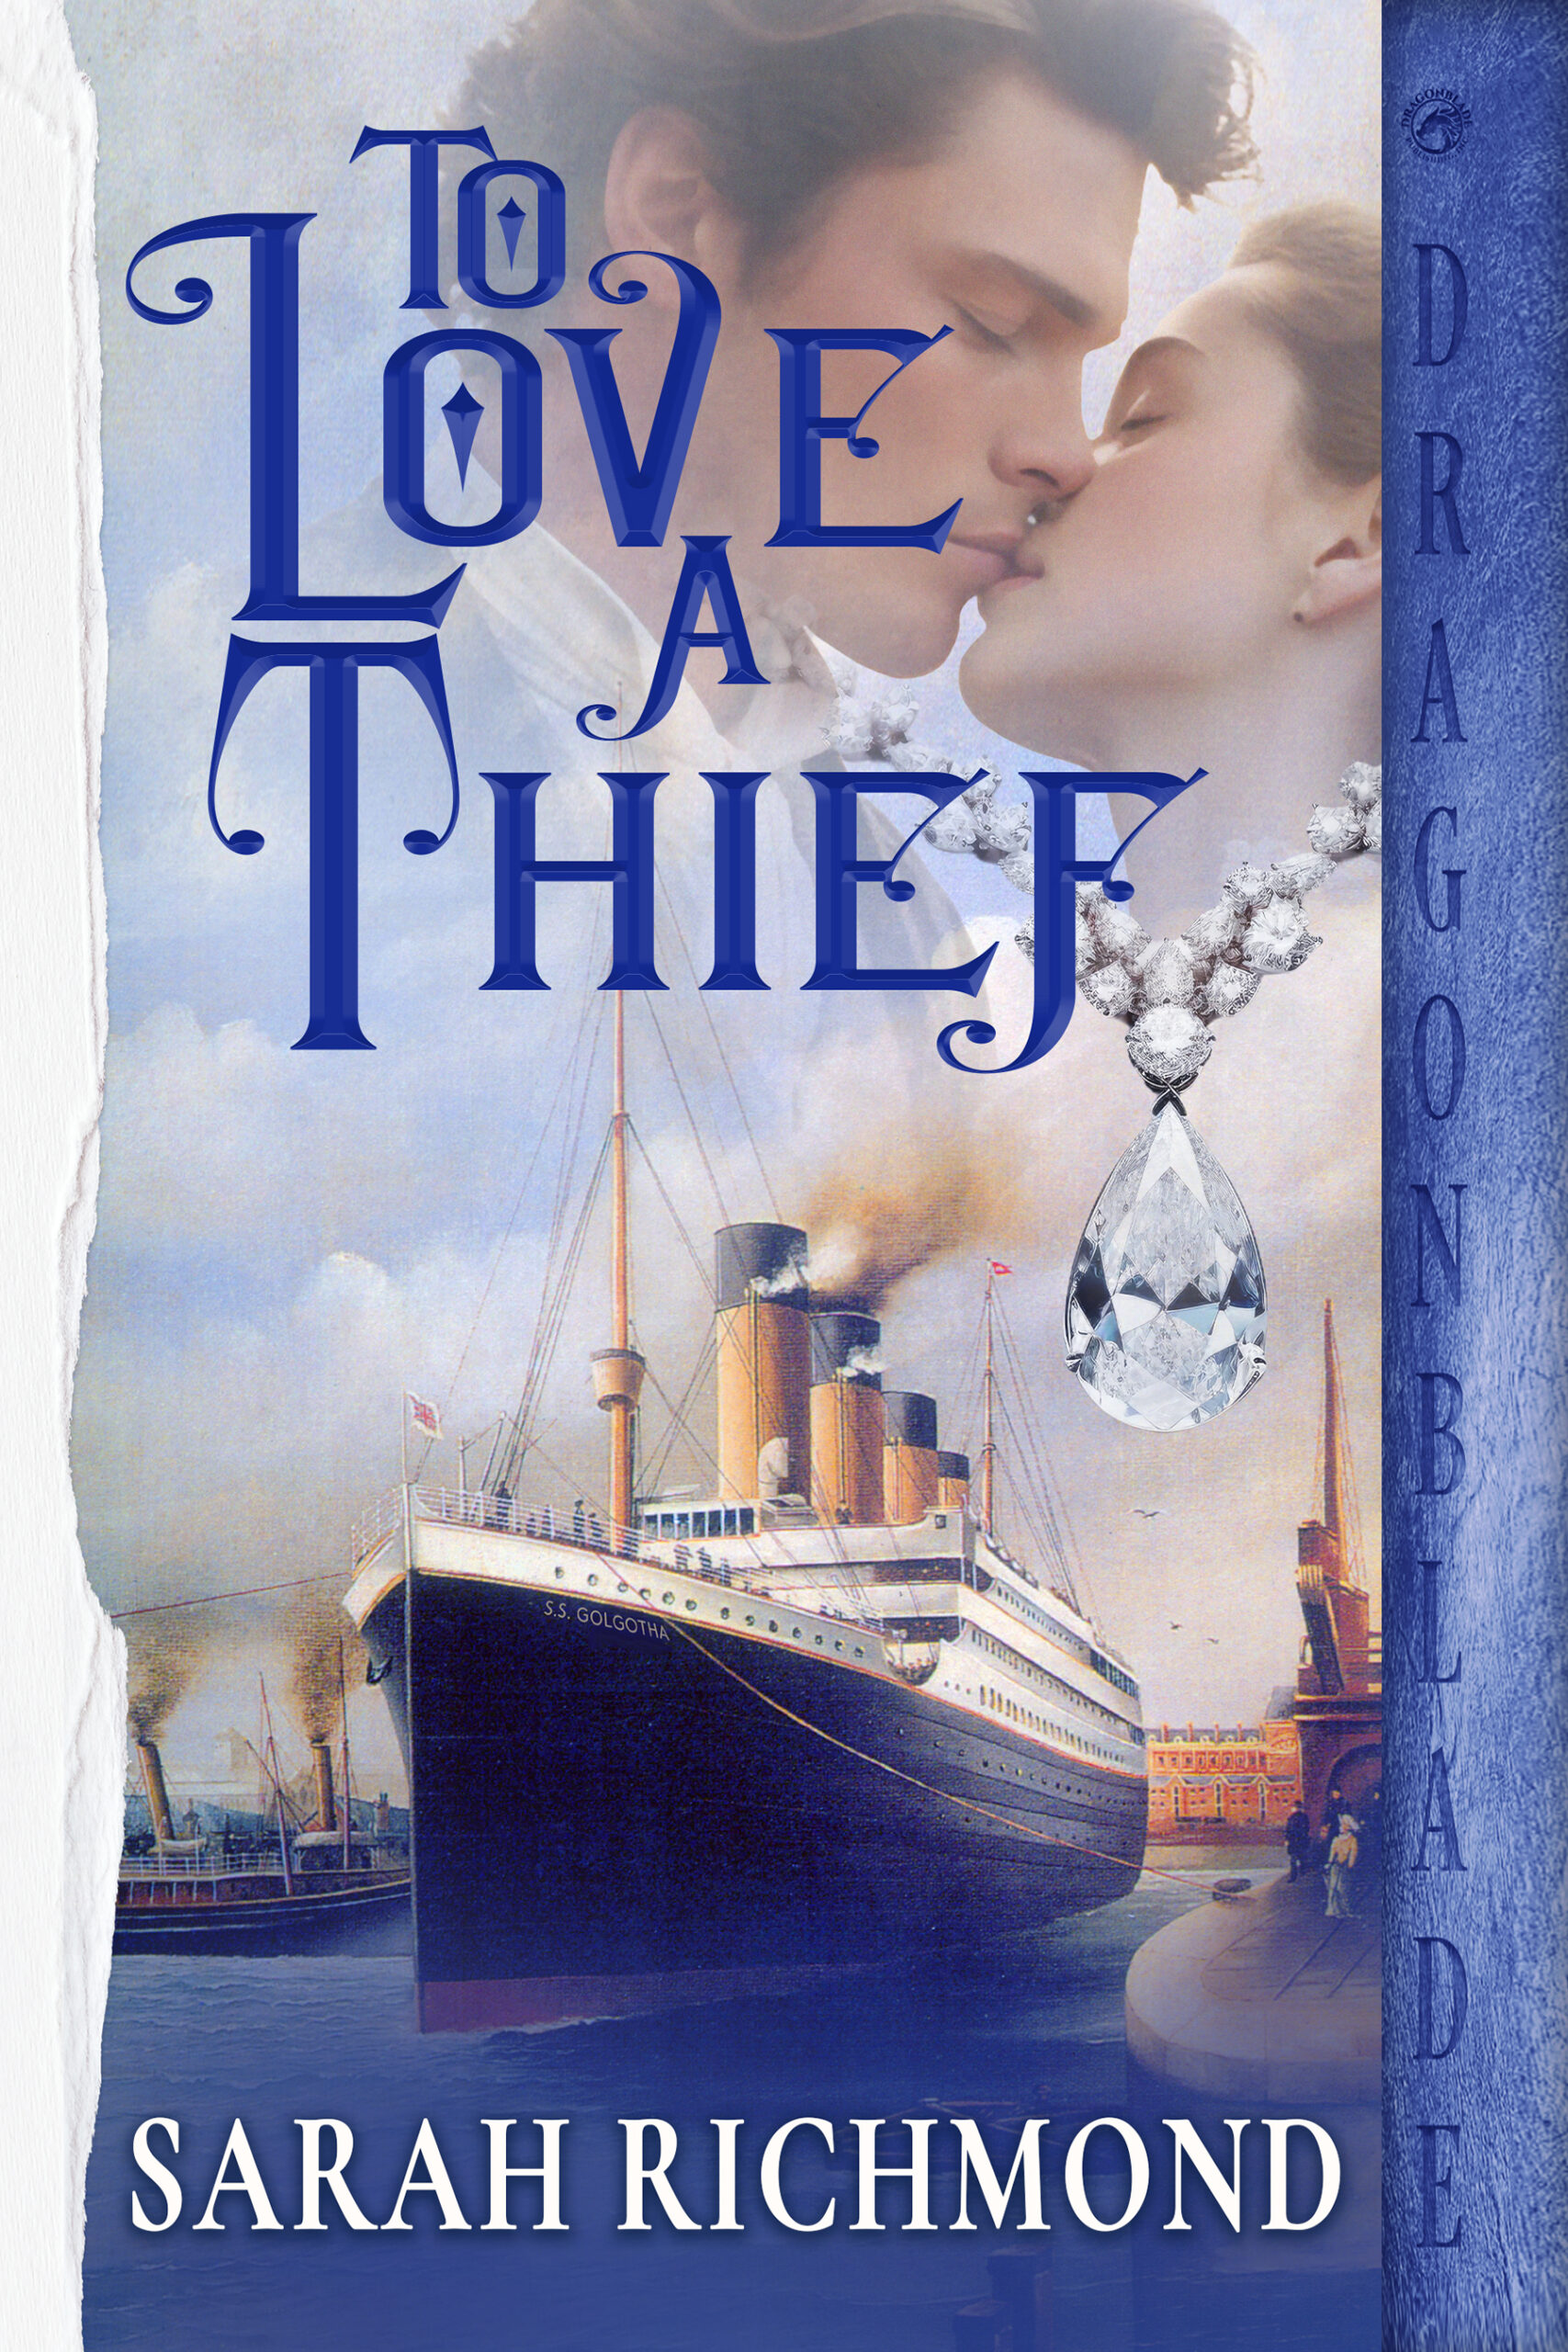 To Love A Thief